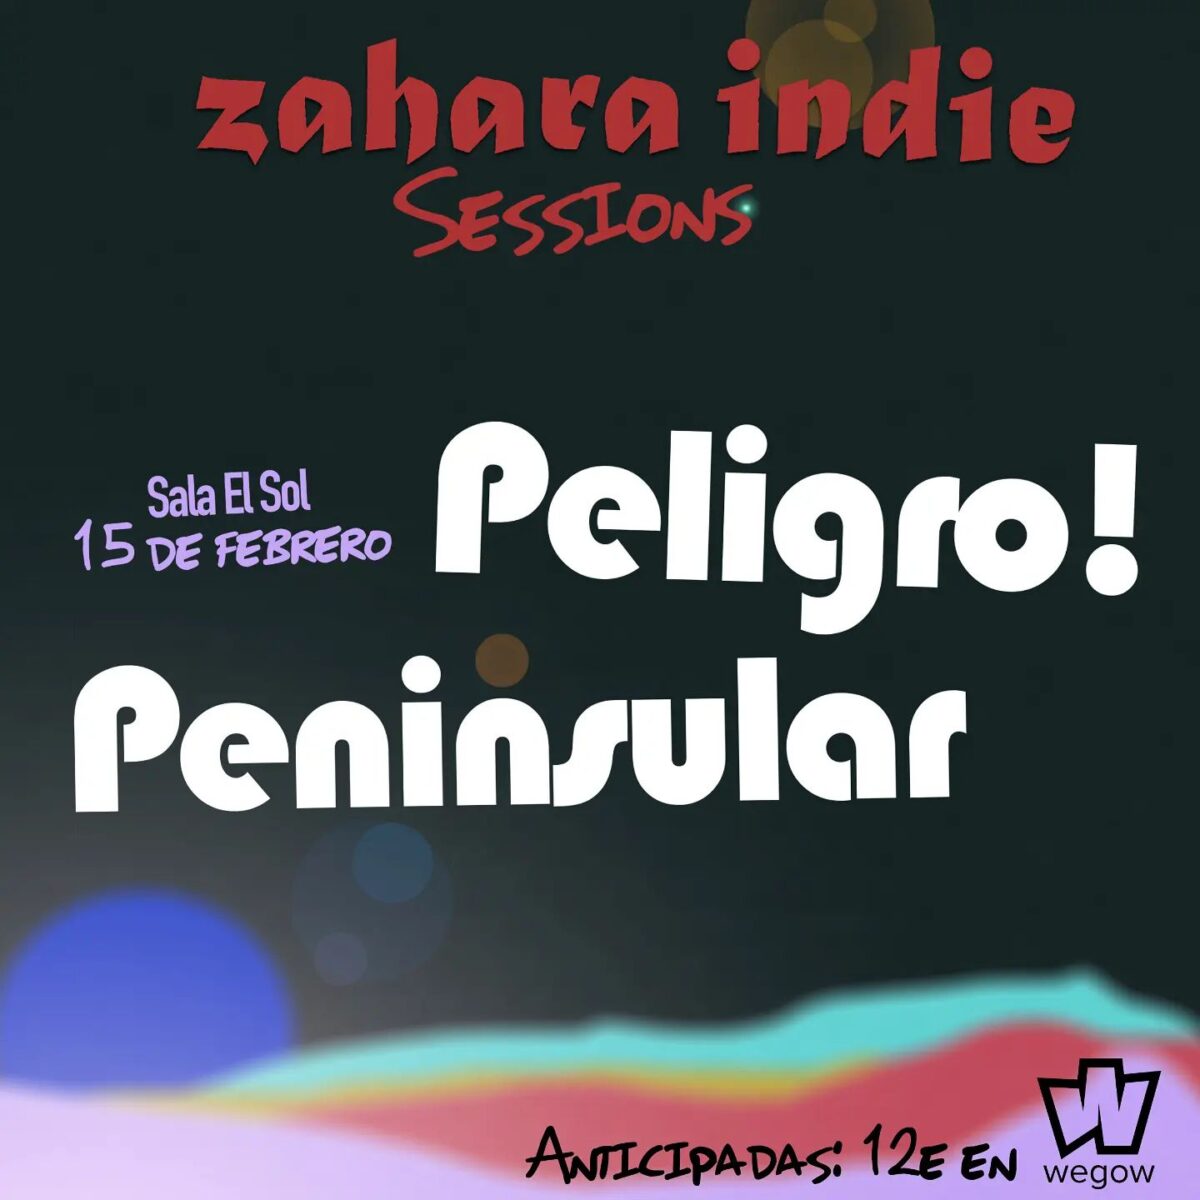 Concierto Peligro! + Peninsular en Sala El Sol - Zahara Indie Sessions